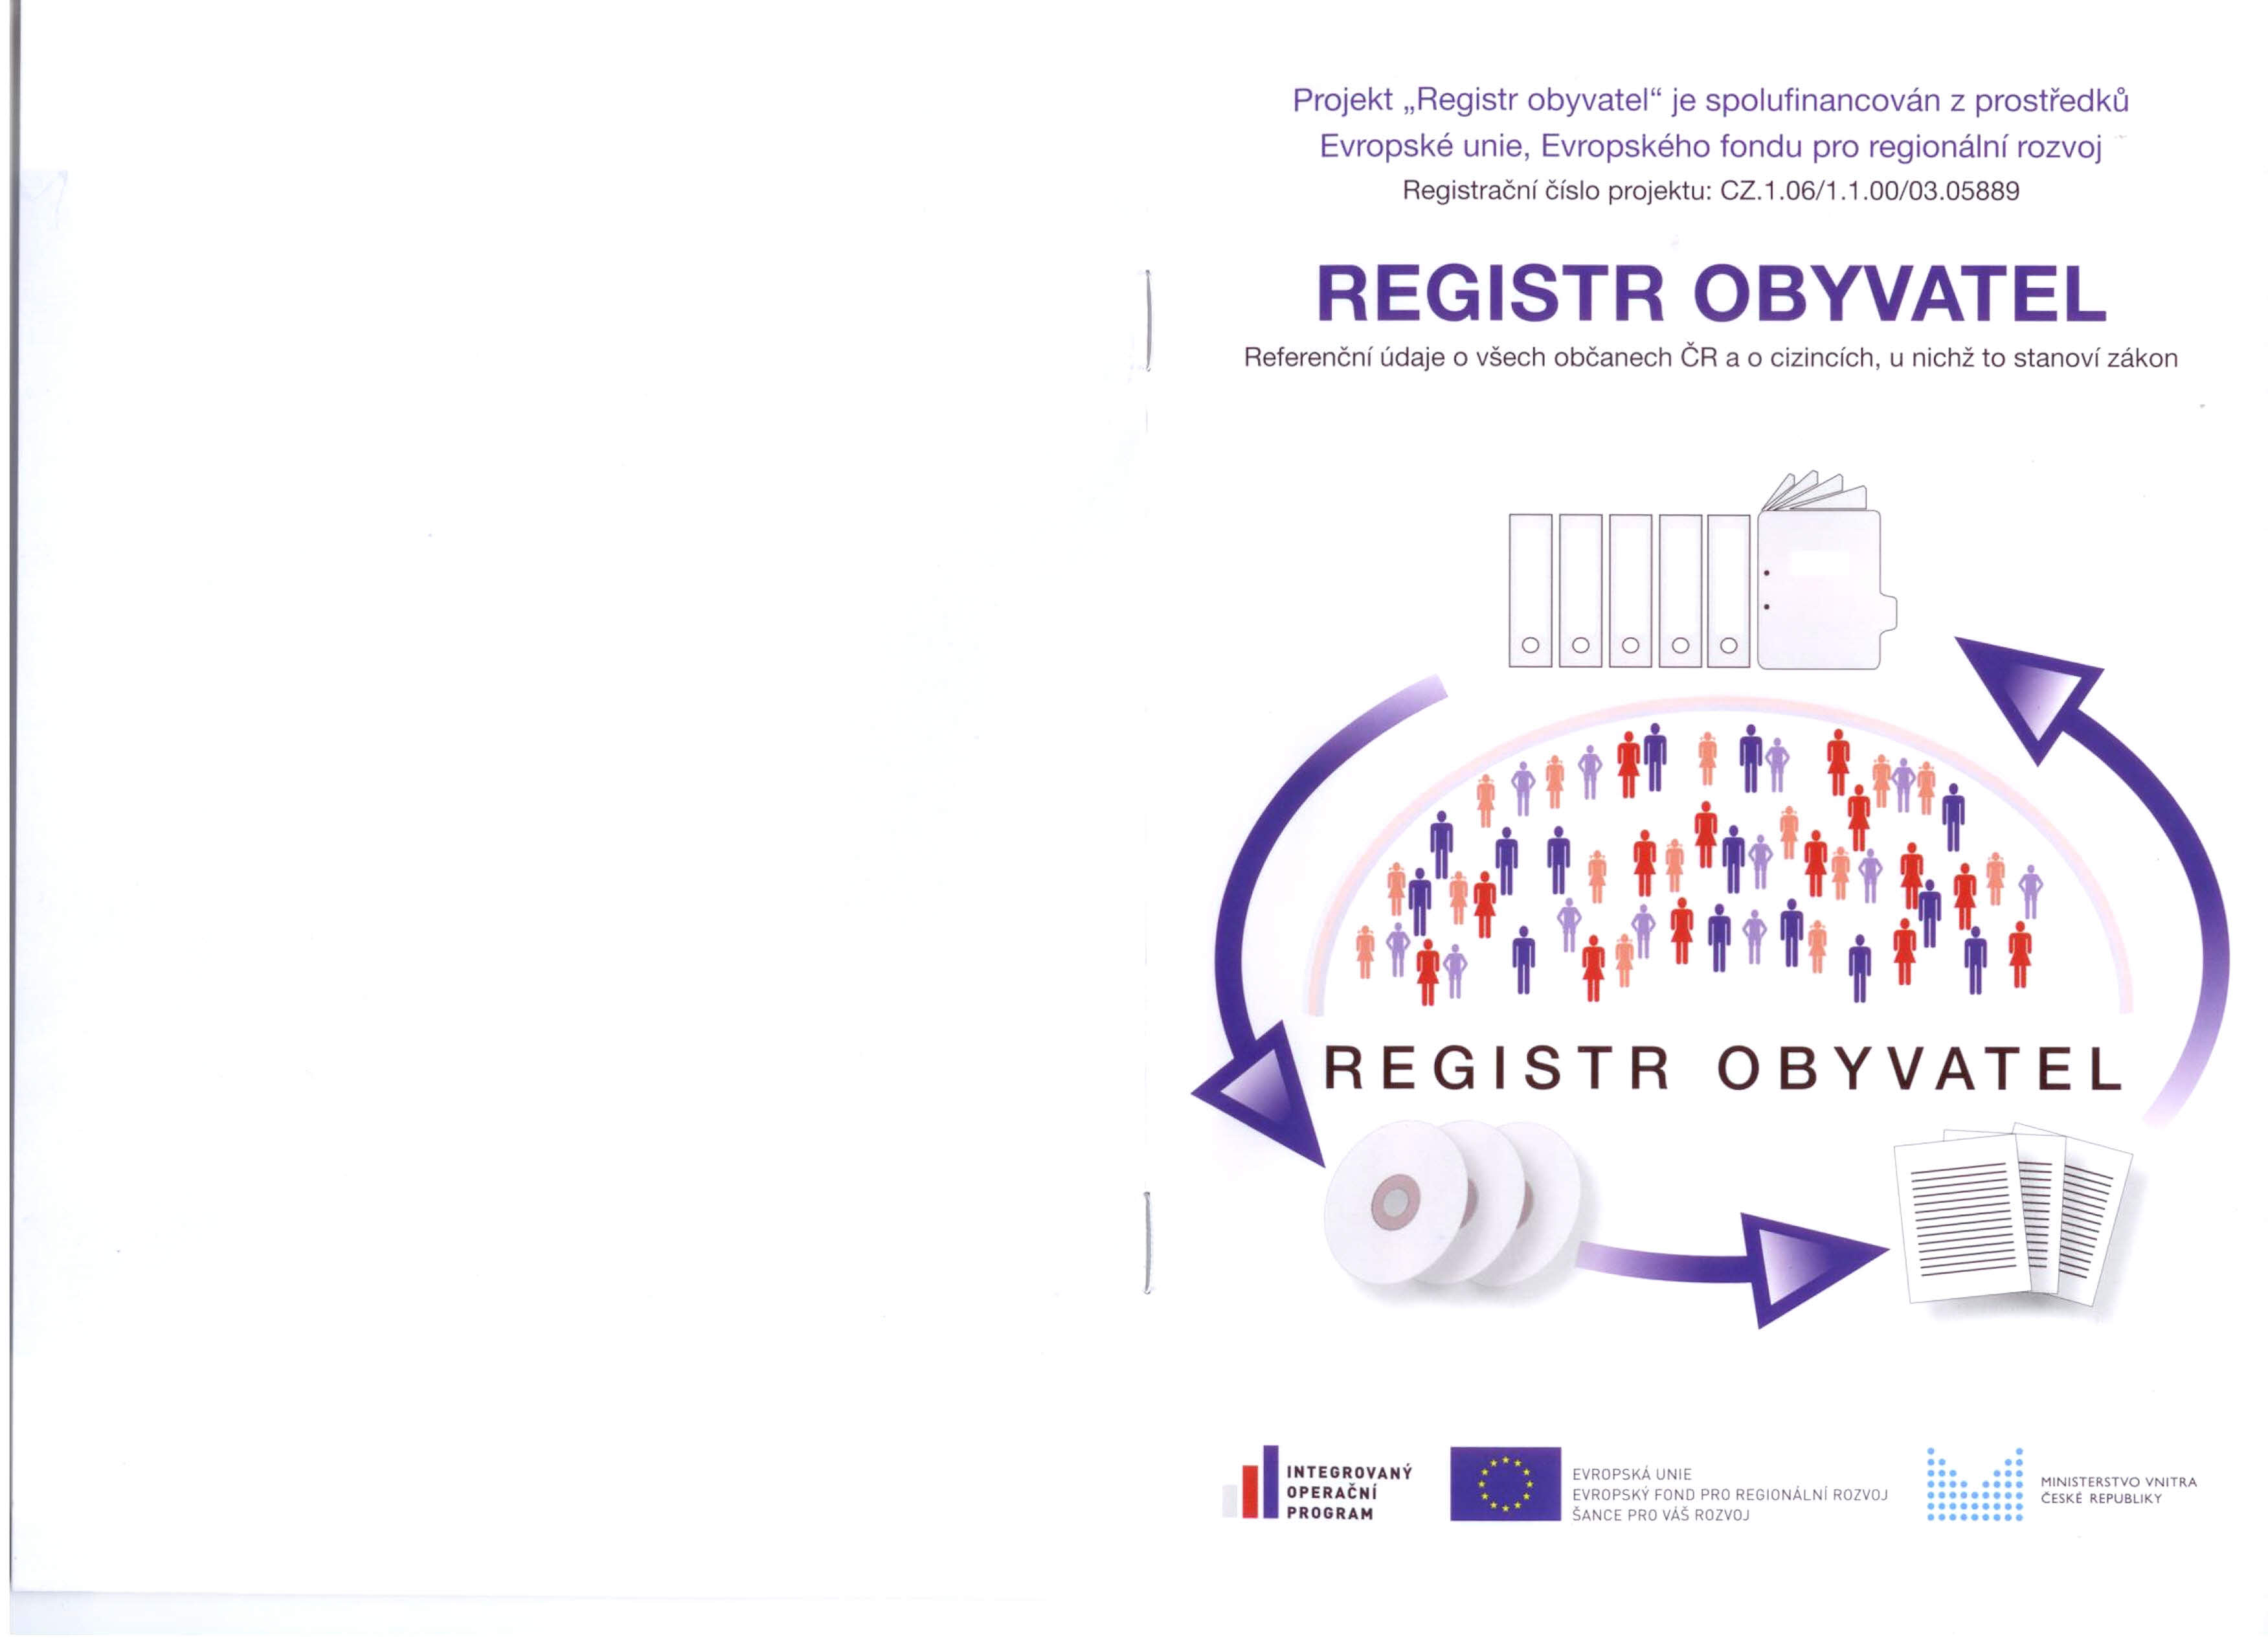 Projekt "Registr obyvatel" je spolufinancován z prostředku Evropské unie, Evropského fondu pro regionální rozvoj Registrační číslo projektu: CZ.1.06/1.1.00/03.